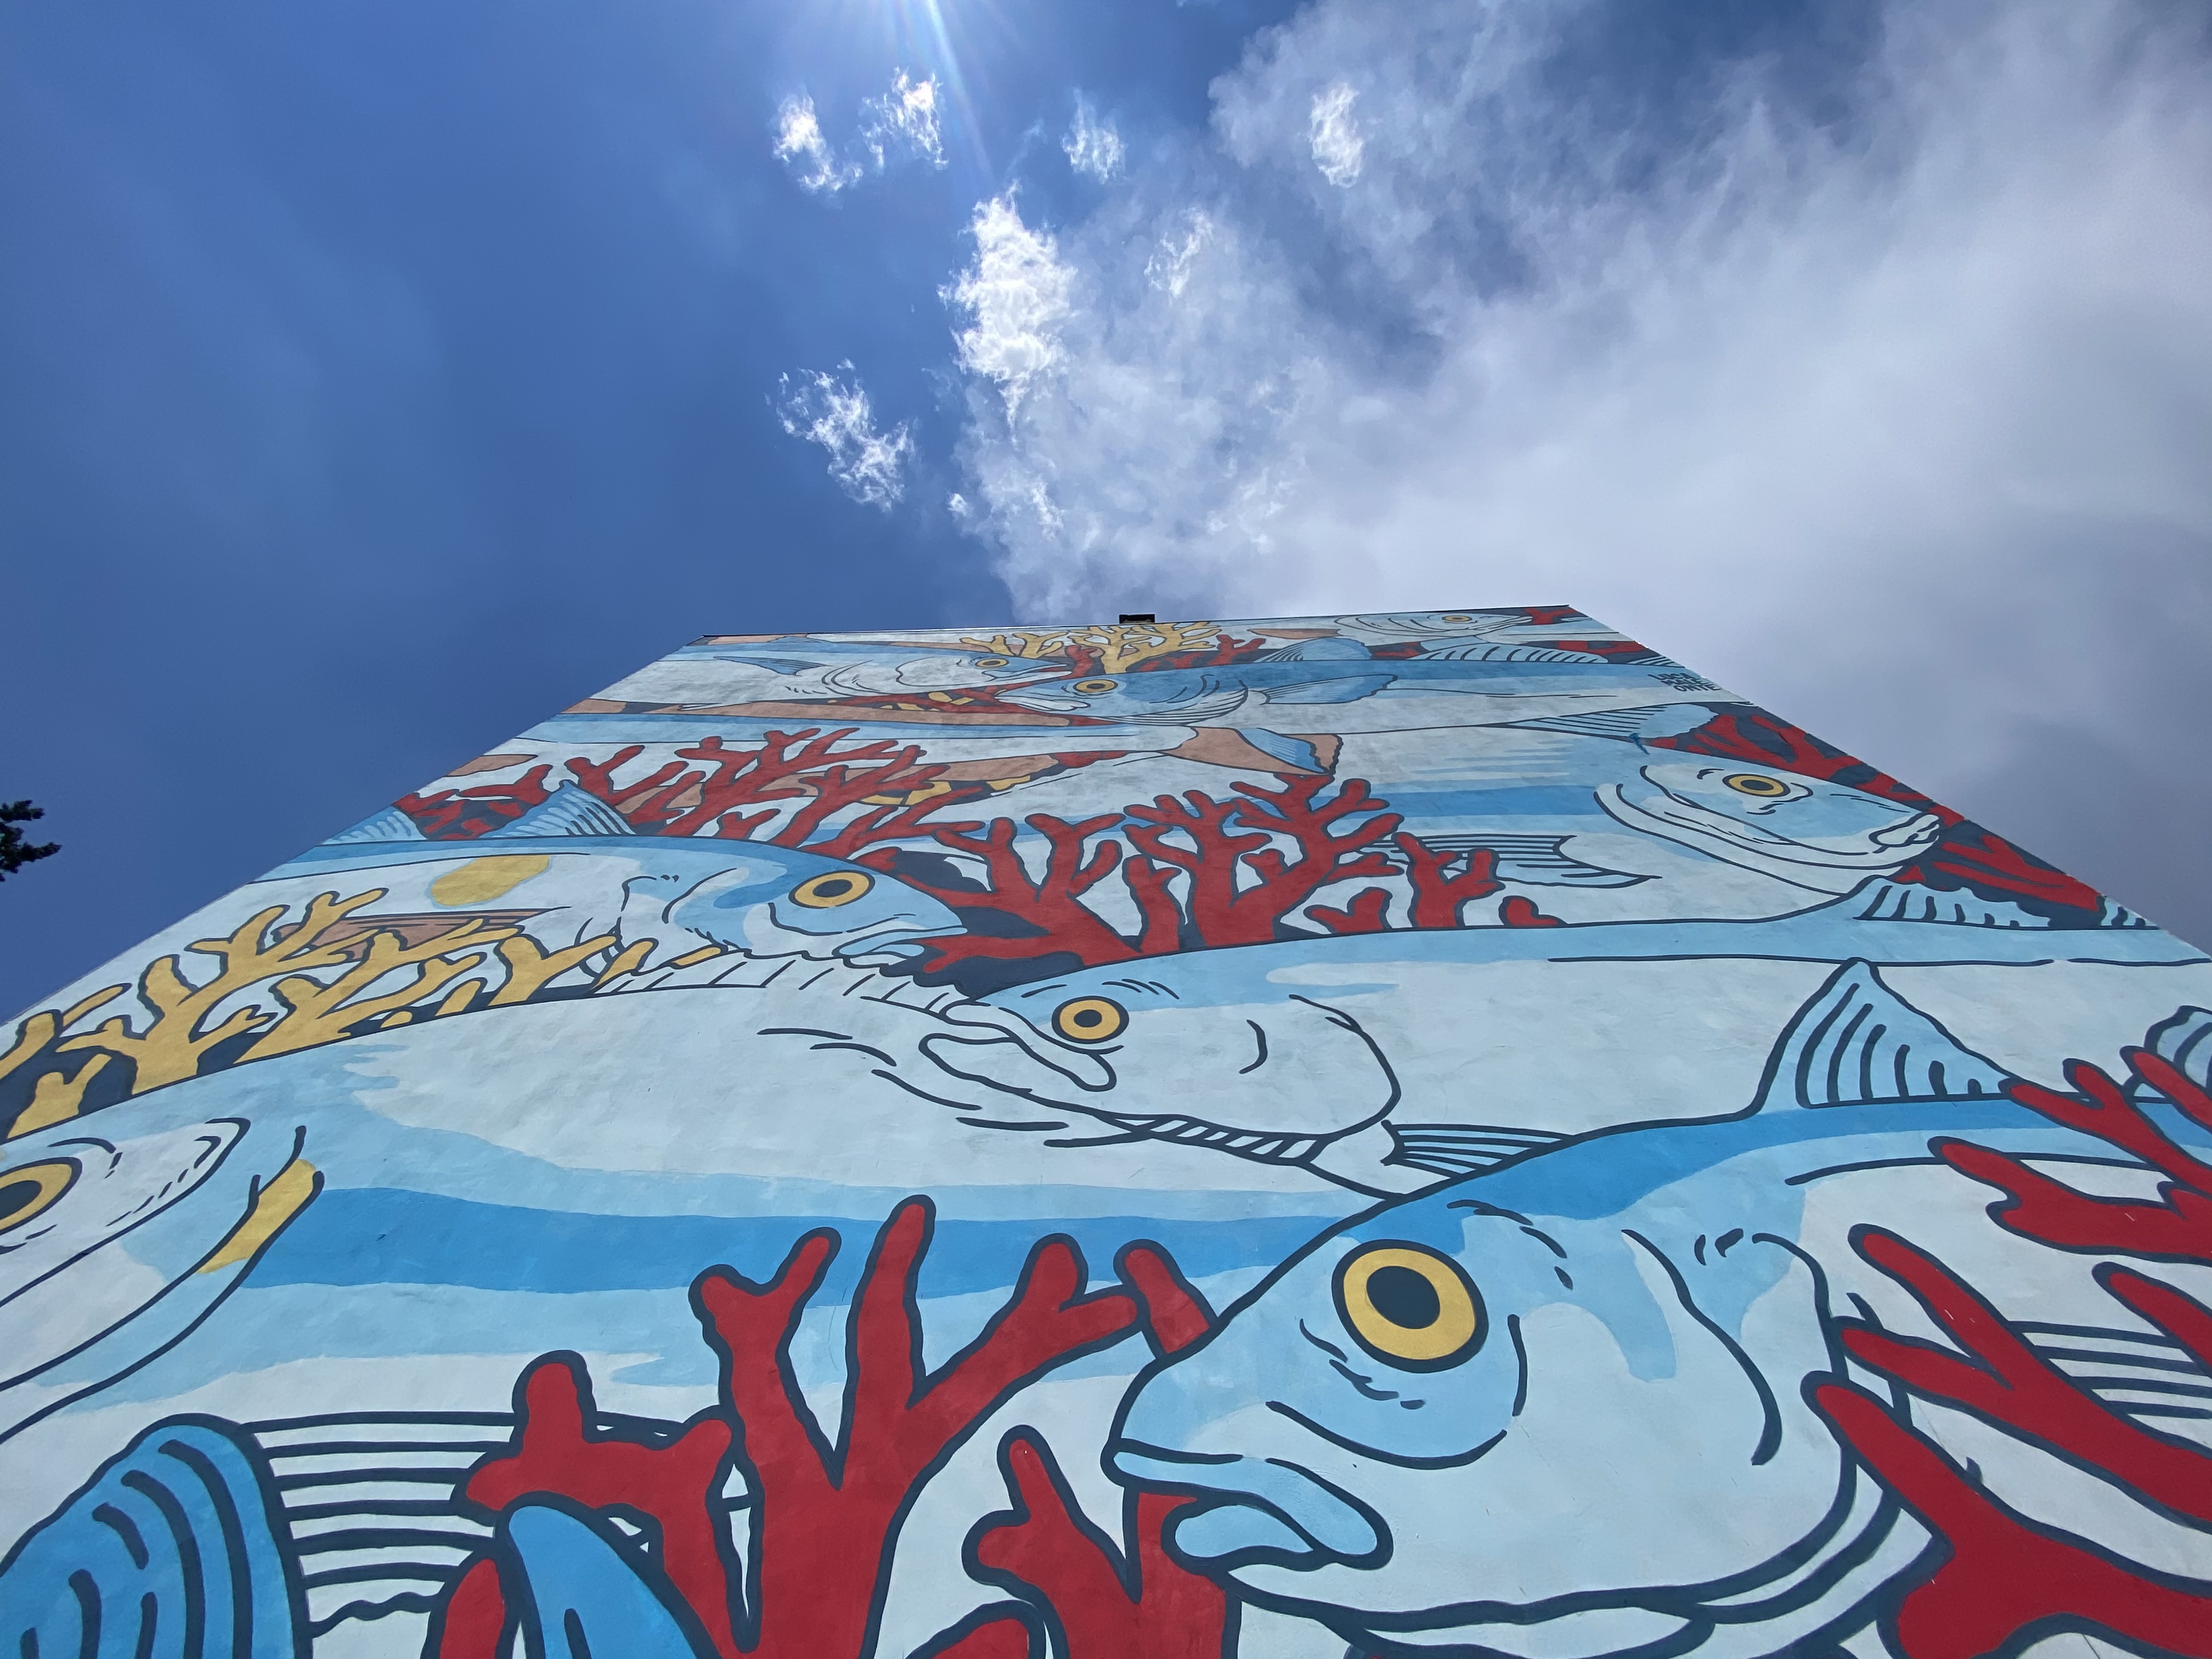 Il mare inonda Roma con l’eco-murale dello street artist Lucamaleonte a Tor Bella Monaca